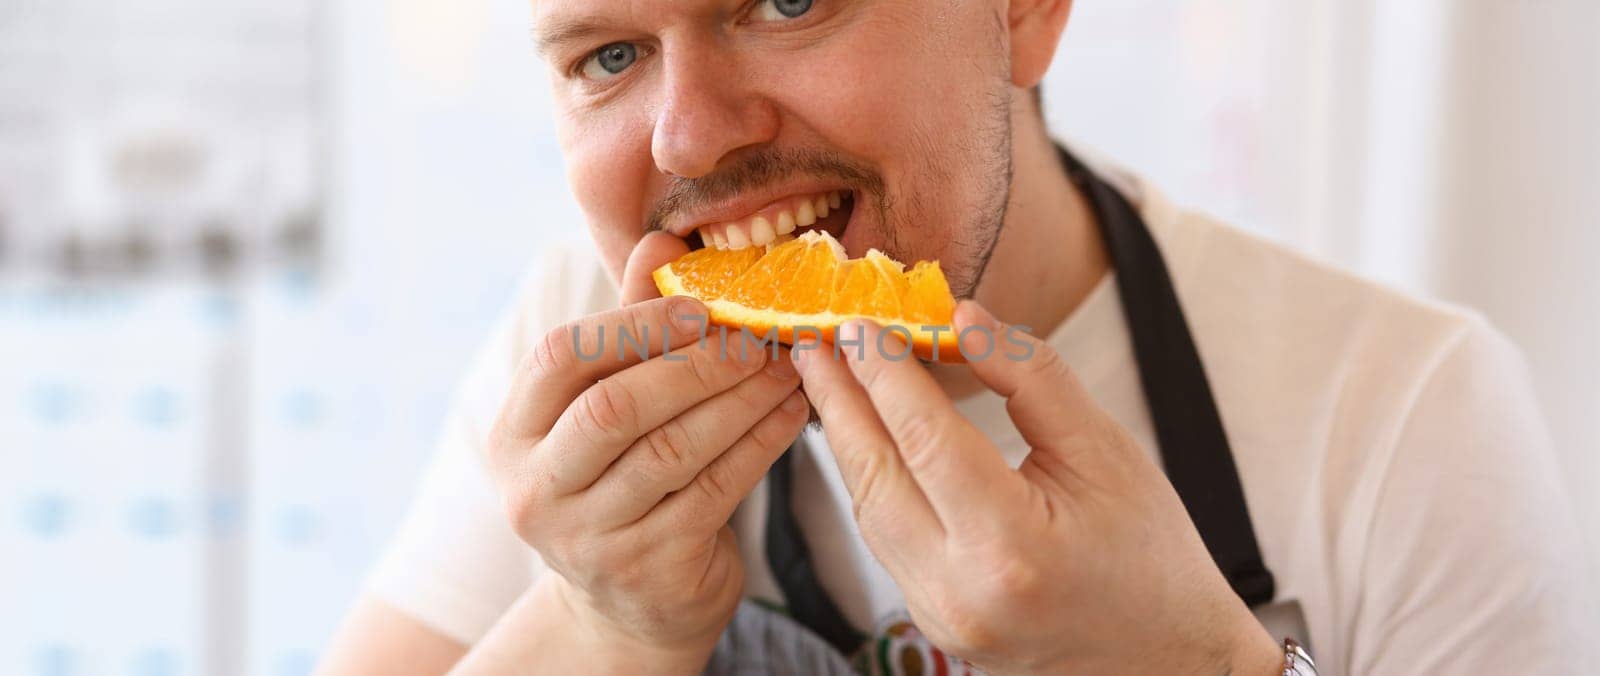 Man Chef Eating Juice Orange Kitchen Portrait by kuprevich